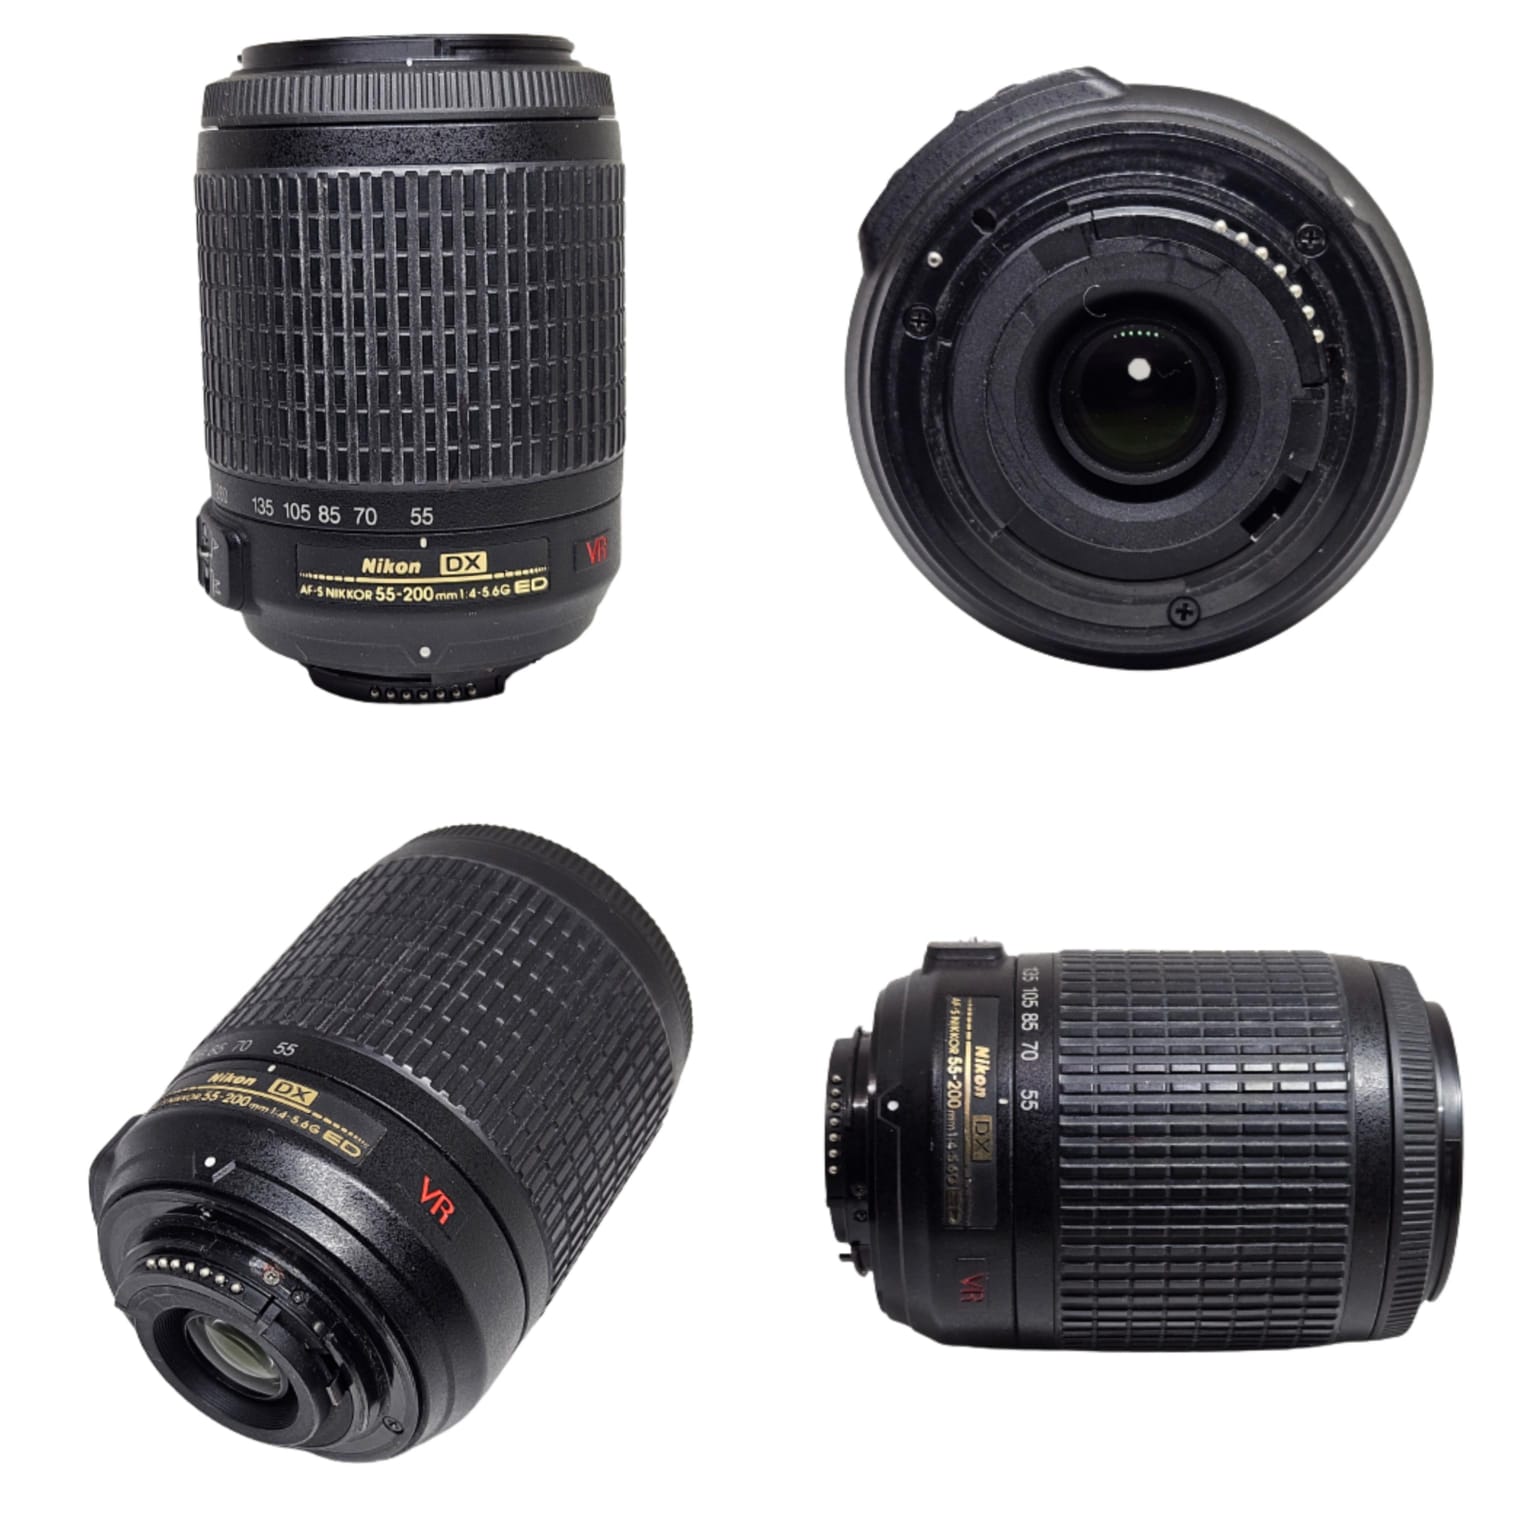 Nikon 55-200 mm f/4-5.6G ED IF Auto foco-s DX VR [Reducción de vibración]  Nikkor Lente de zoom